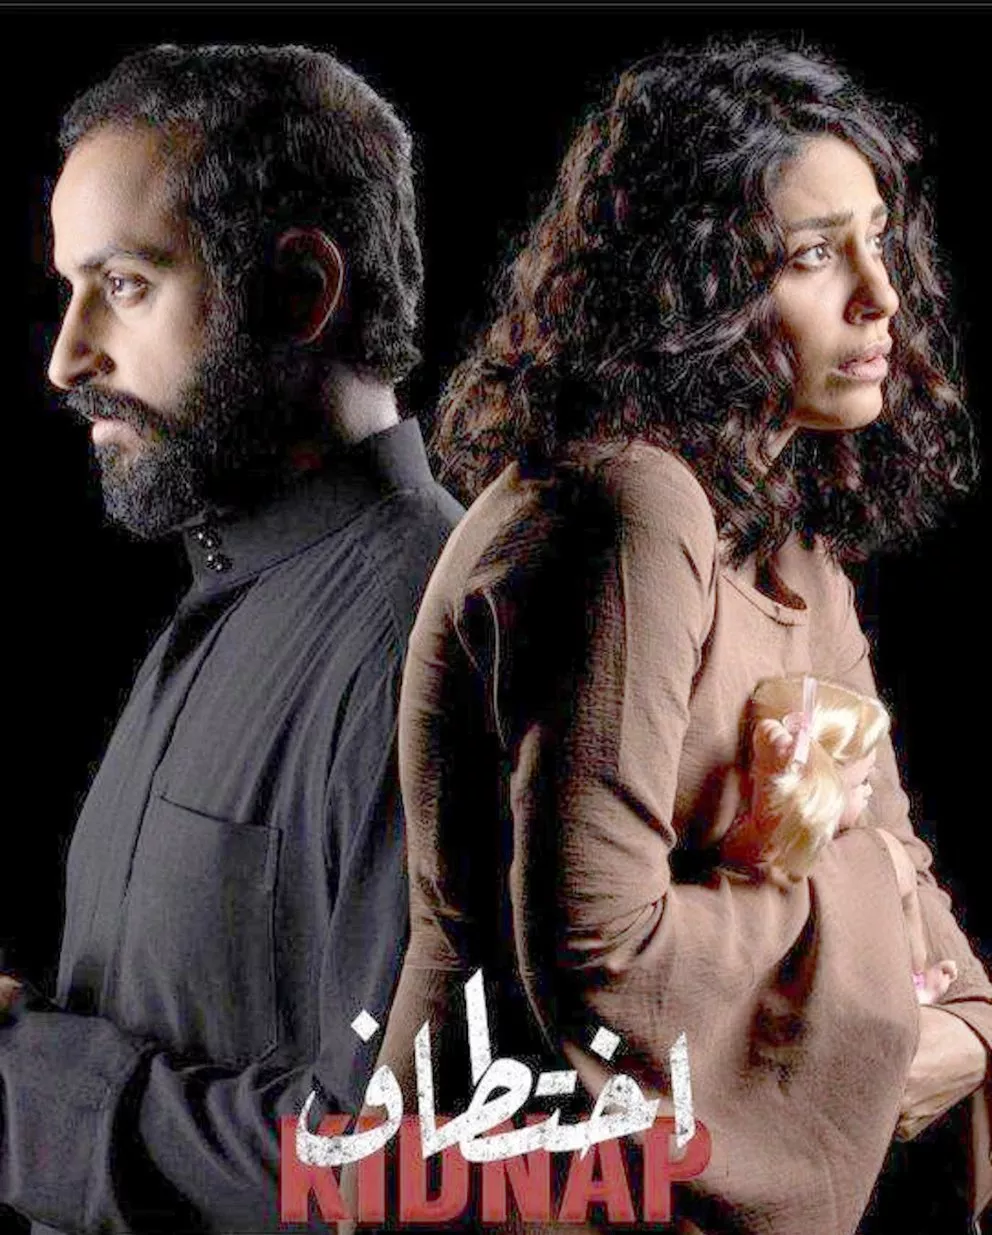 ما هو افضل مسلسل سعودي؟ إليكِ لائحة بأسماء أشهر المسلسلات